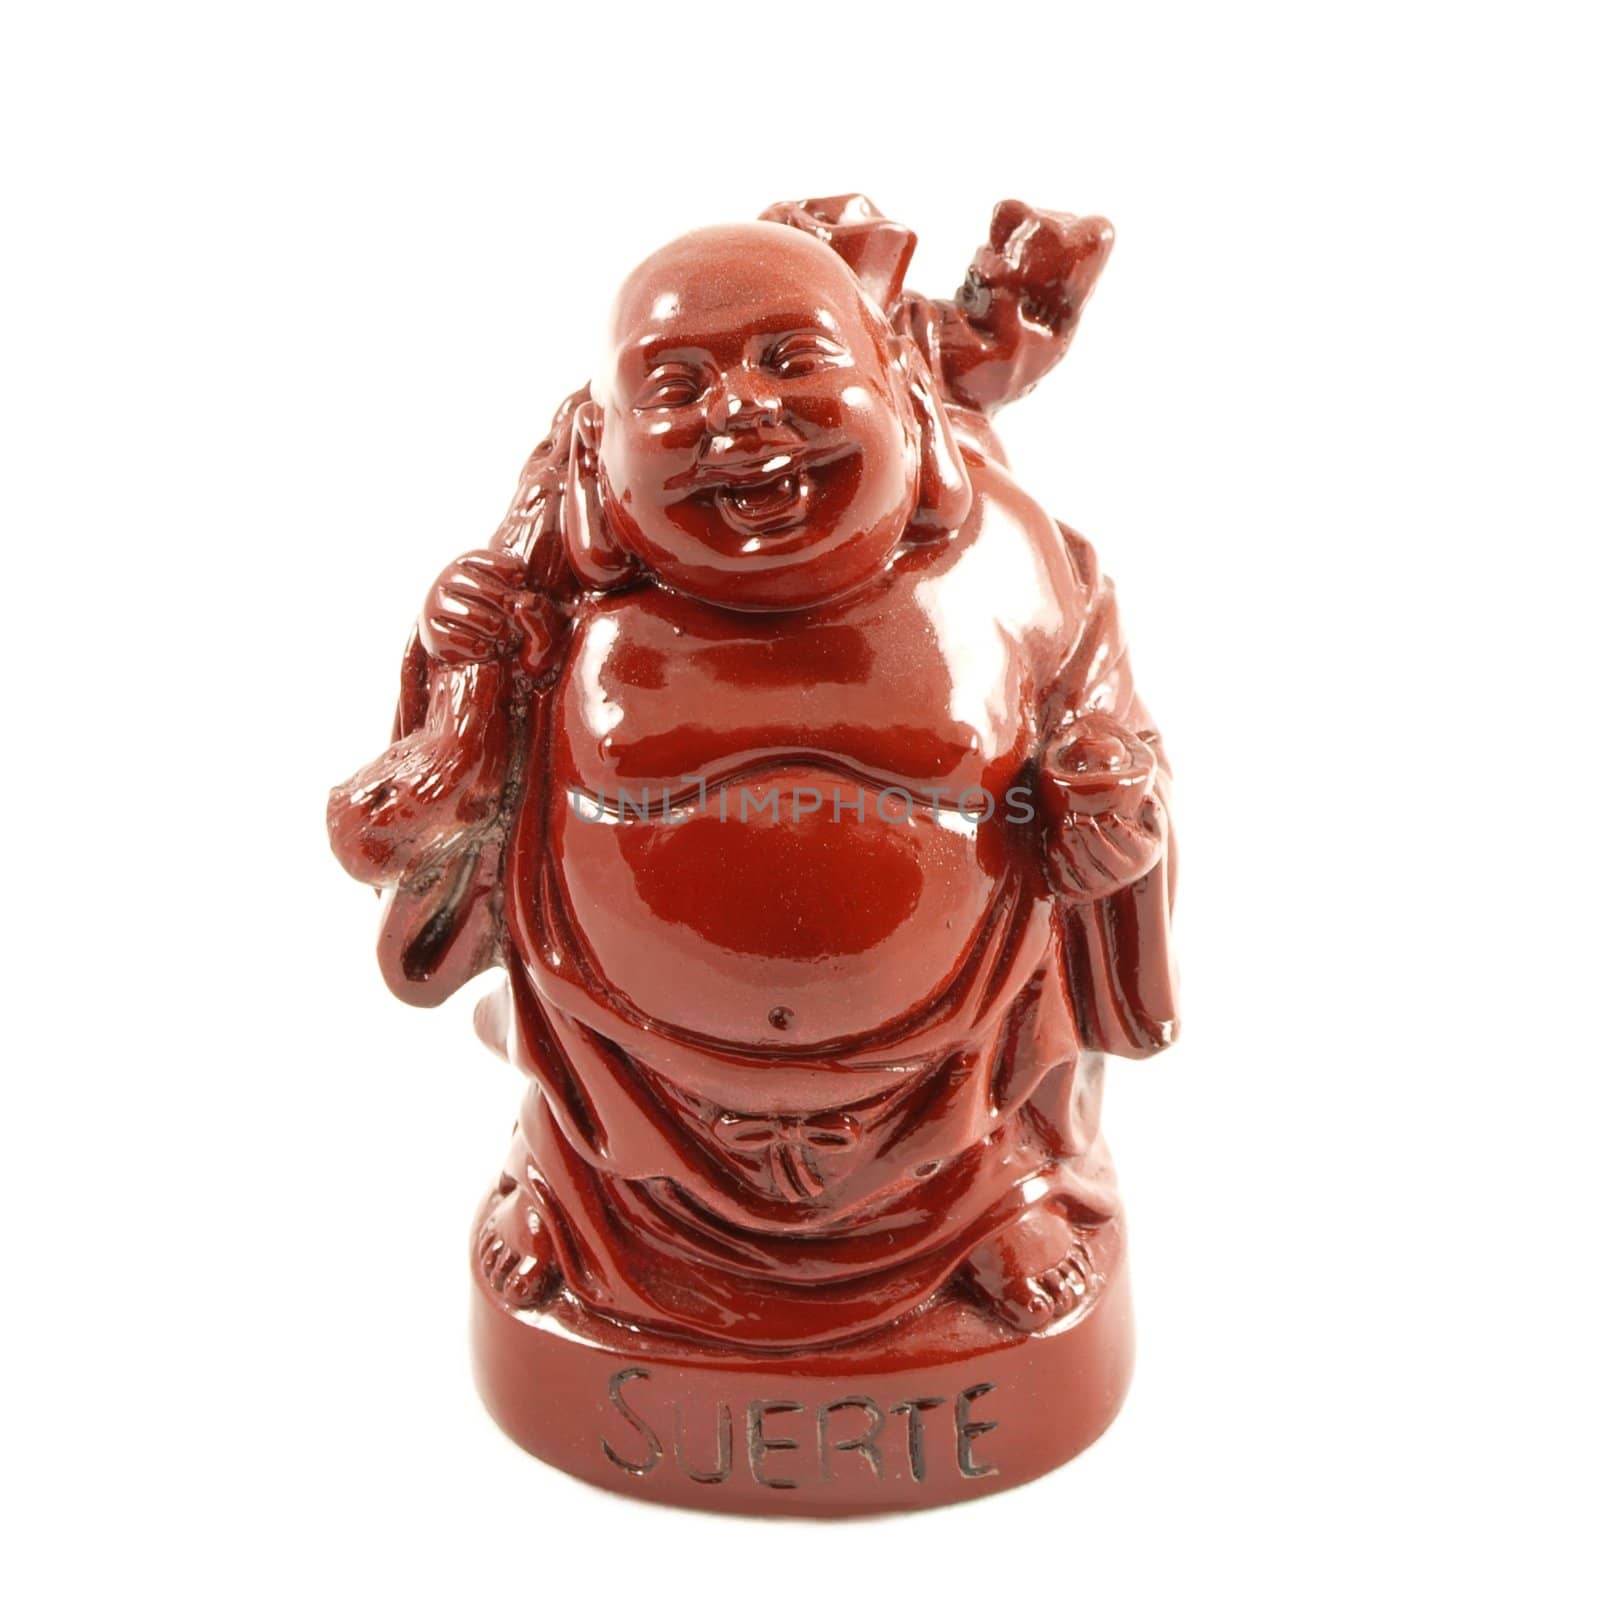 Little Buddha model by Arvebettum